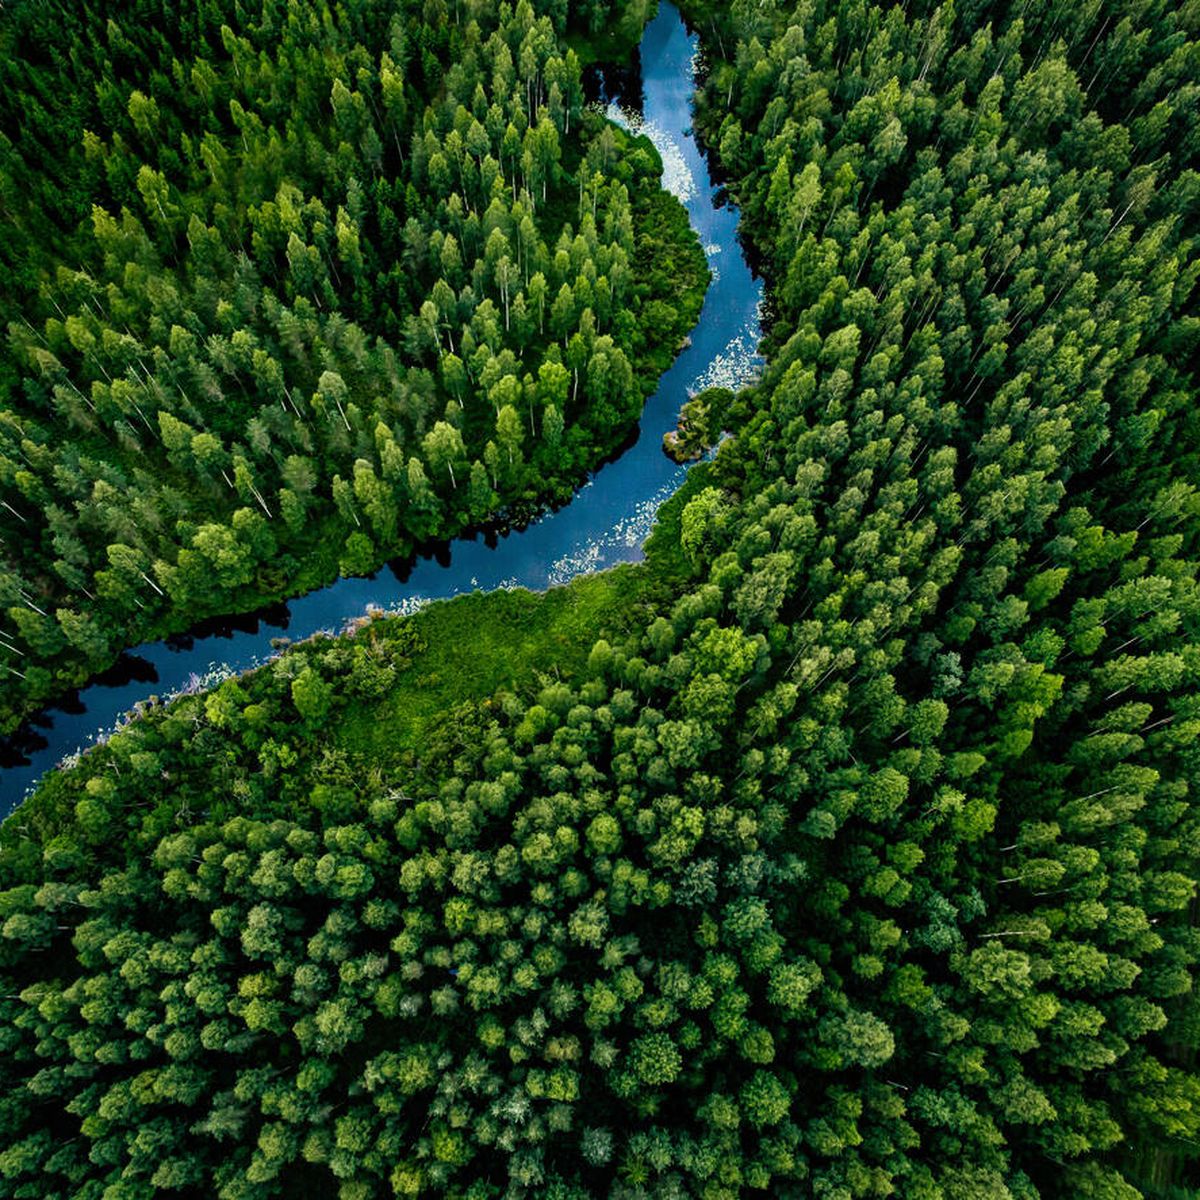 La reducción de árboles en el bosque ayuda a secuestrar más carbono del aire